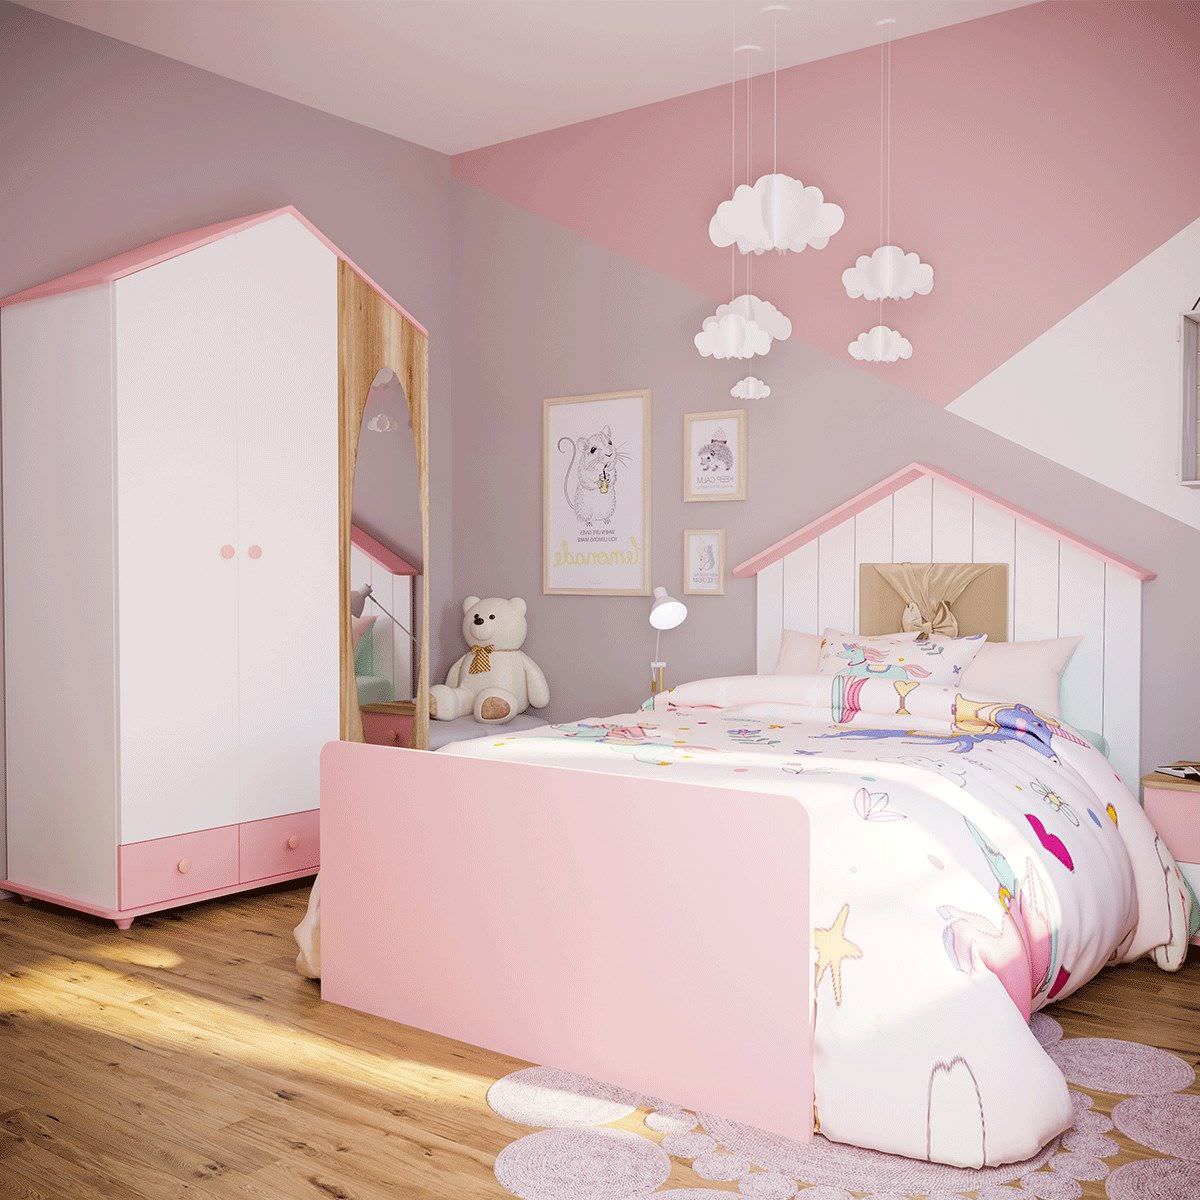 Một số lưu ý trong thiết kế phòng ngủ cho bé gái 